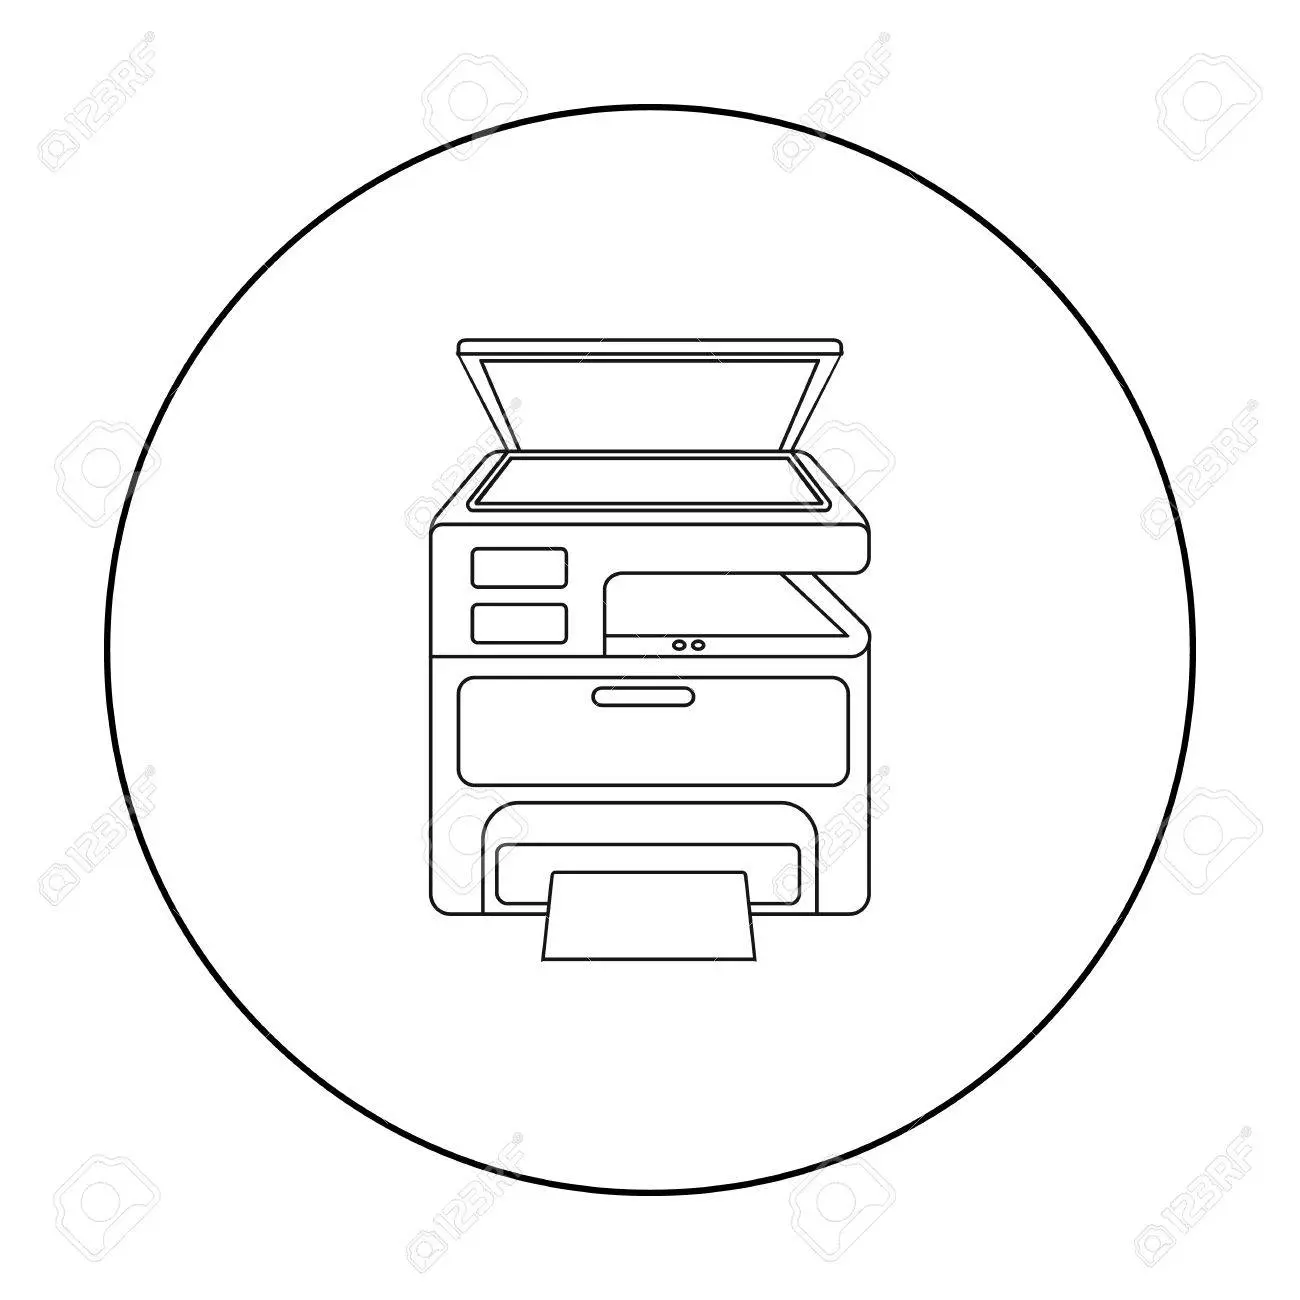 fotocopiadora multifuncional simbolos - Qué hacer si mi impresora imprime simbolos raros